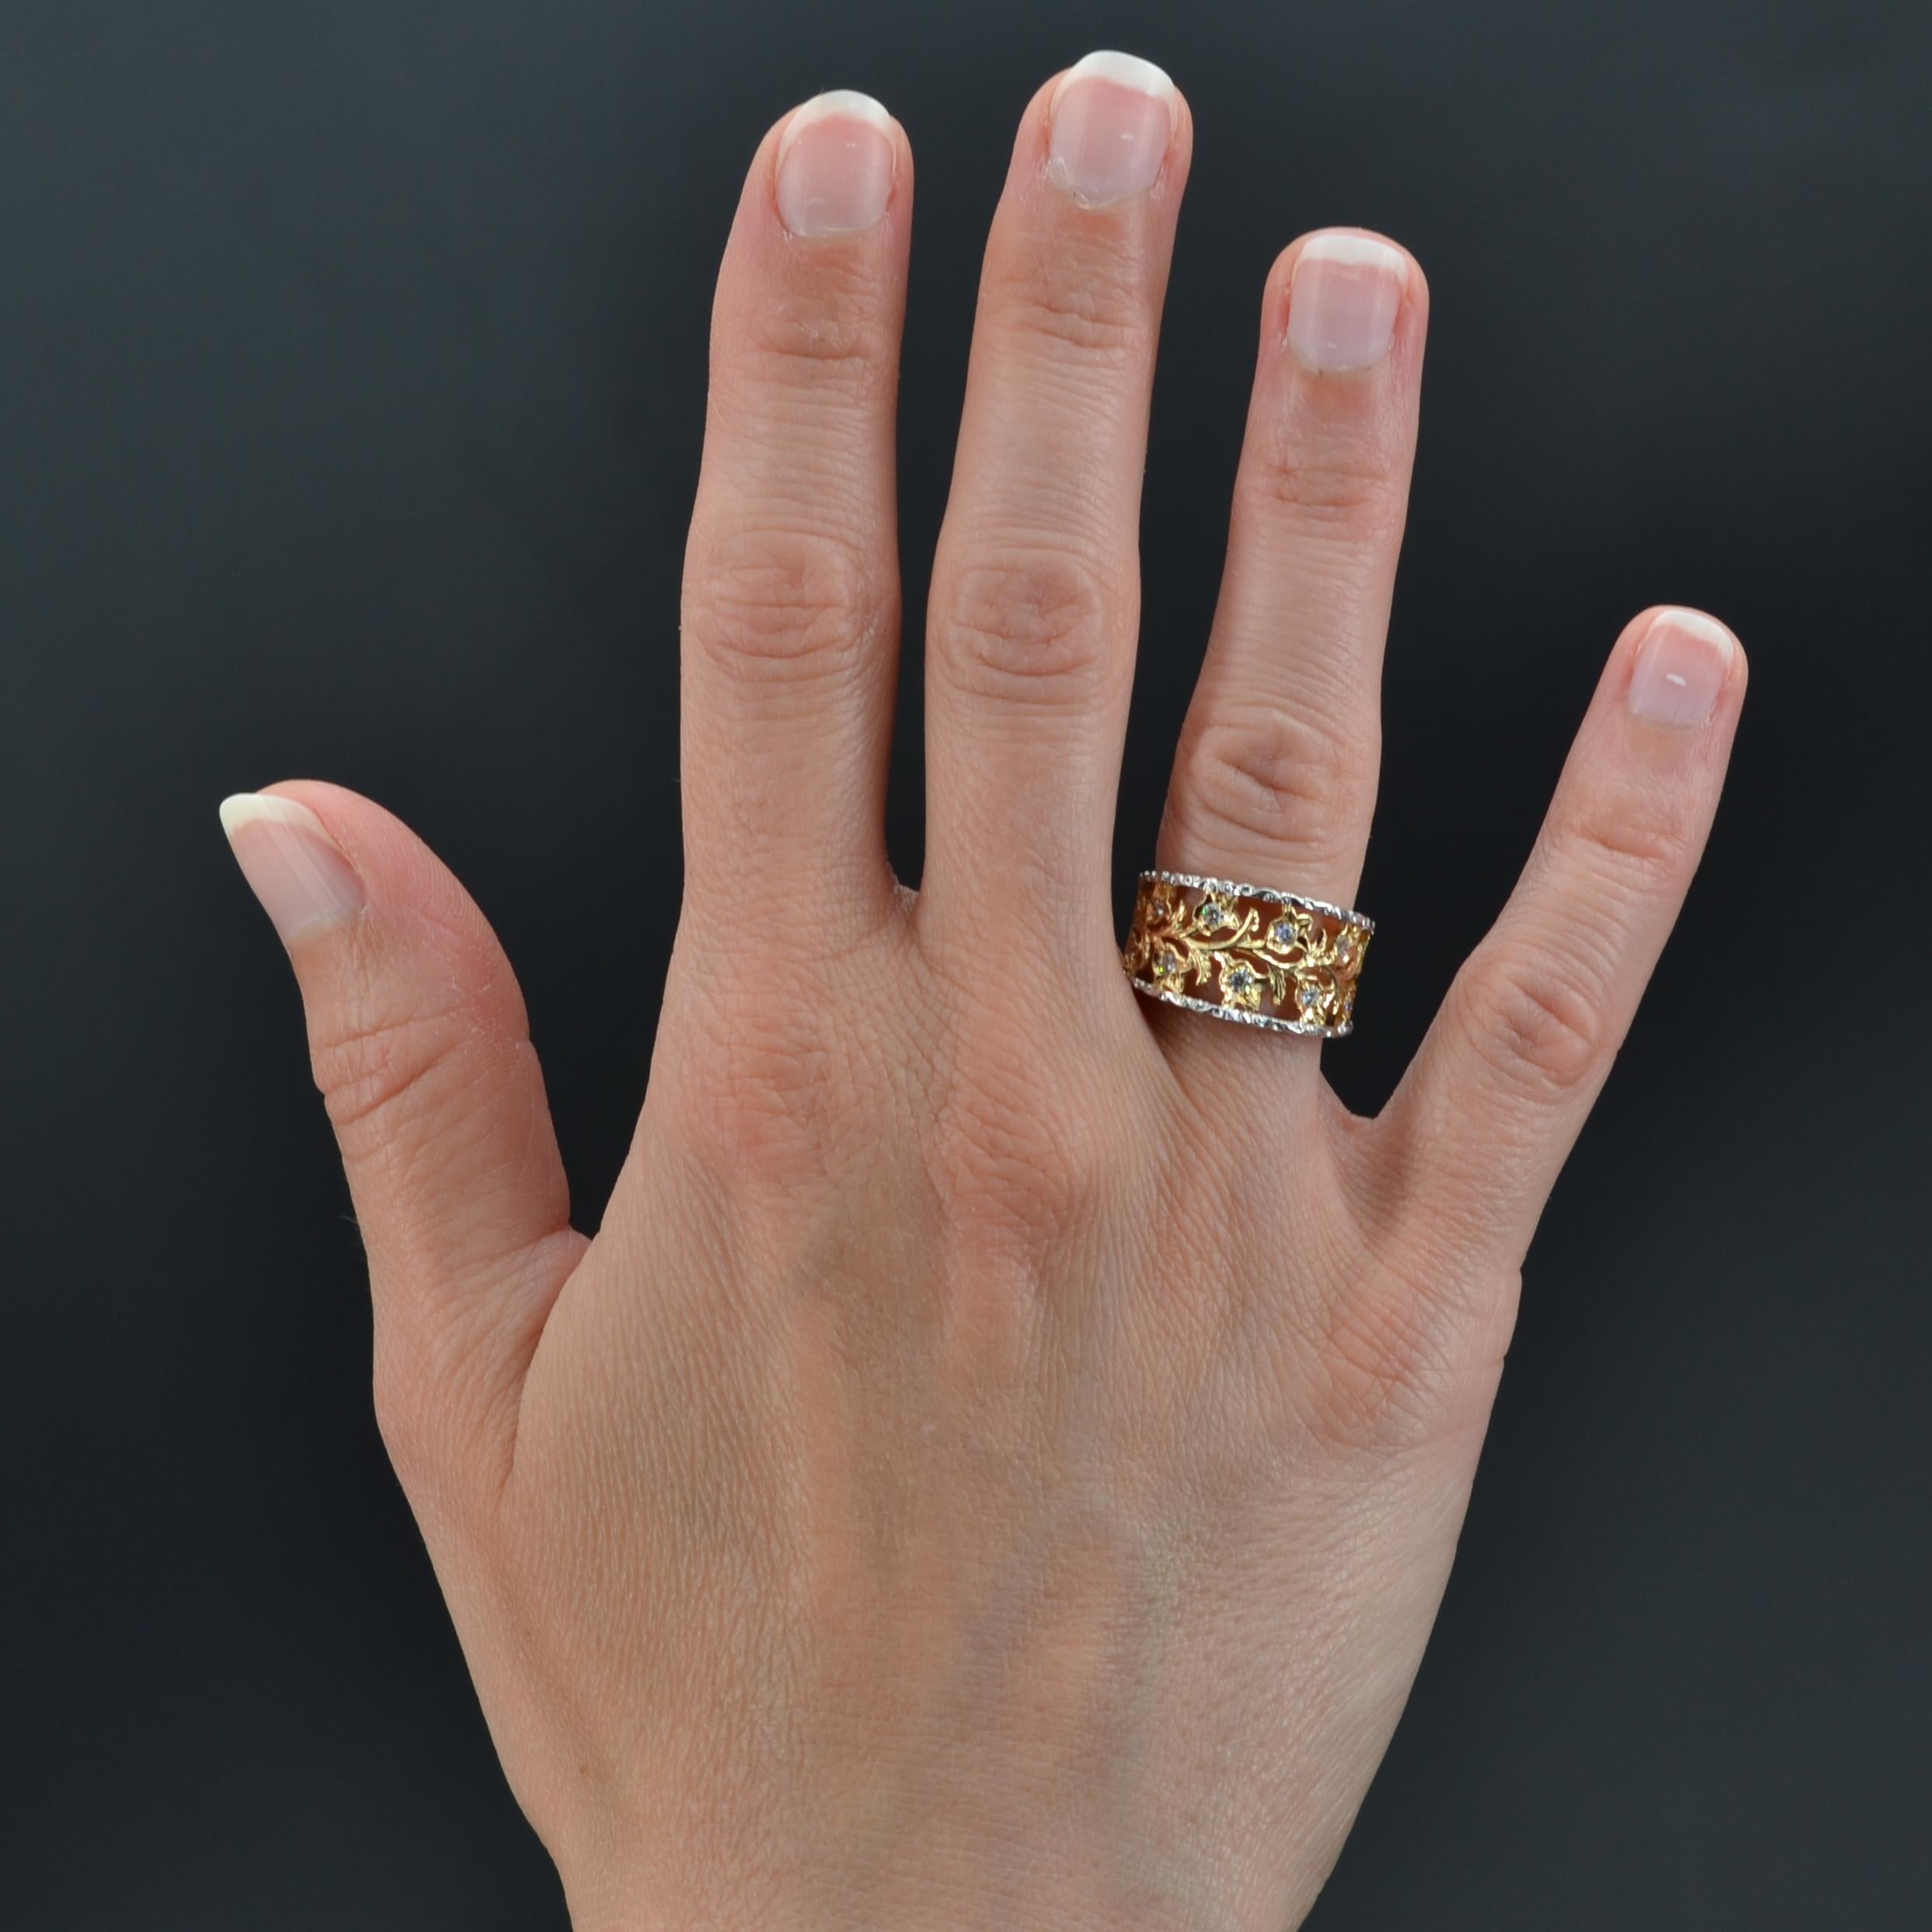 Ring aus 18 Karat Weiß- und Gelbgold.
Ring mit durchbrochenem Blumendekor aus Gelbgold, in dessen Mitte jede Blüte mit einem modernen Diamanten im Brillantschliff besetzt ist. Die Ränder der Fassung sind aus ziseliertem Weißgold.
Gesamtgewicht der